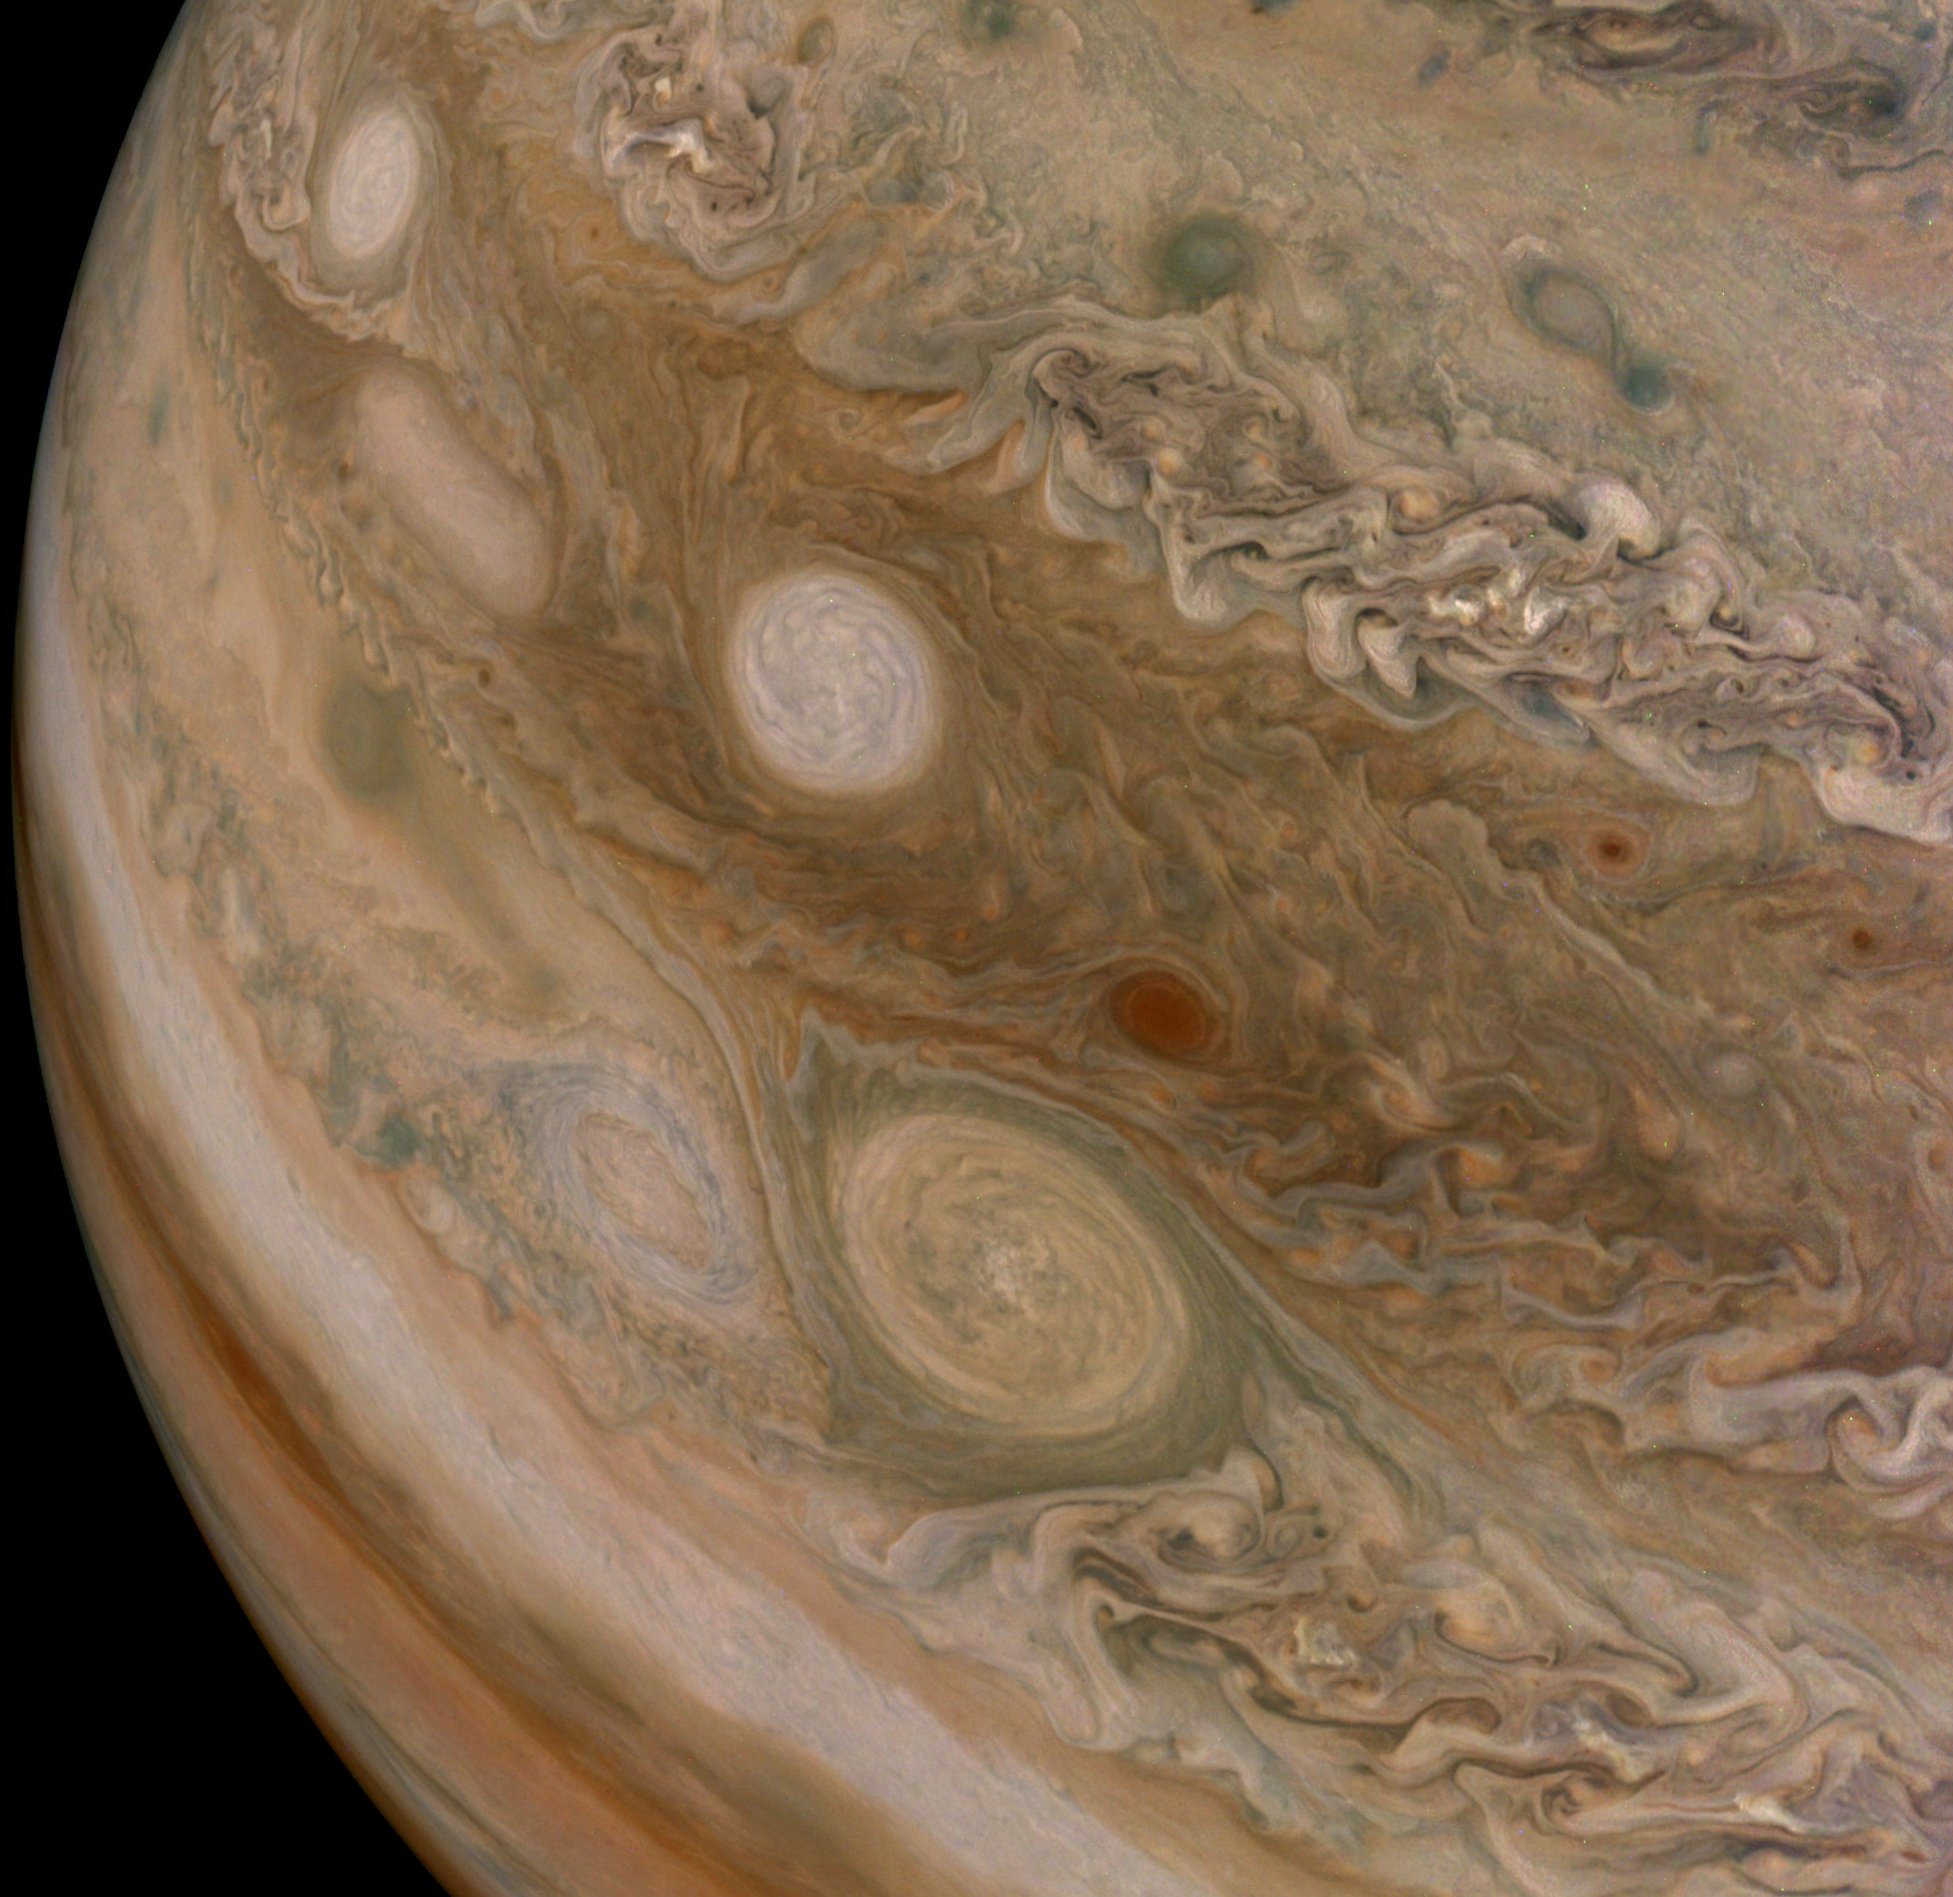 Prístroj Juno Waves zaregistroval rádiové emisie z Jupiterovho magnetického poľa